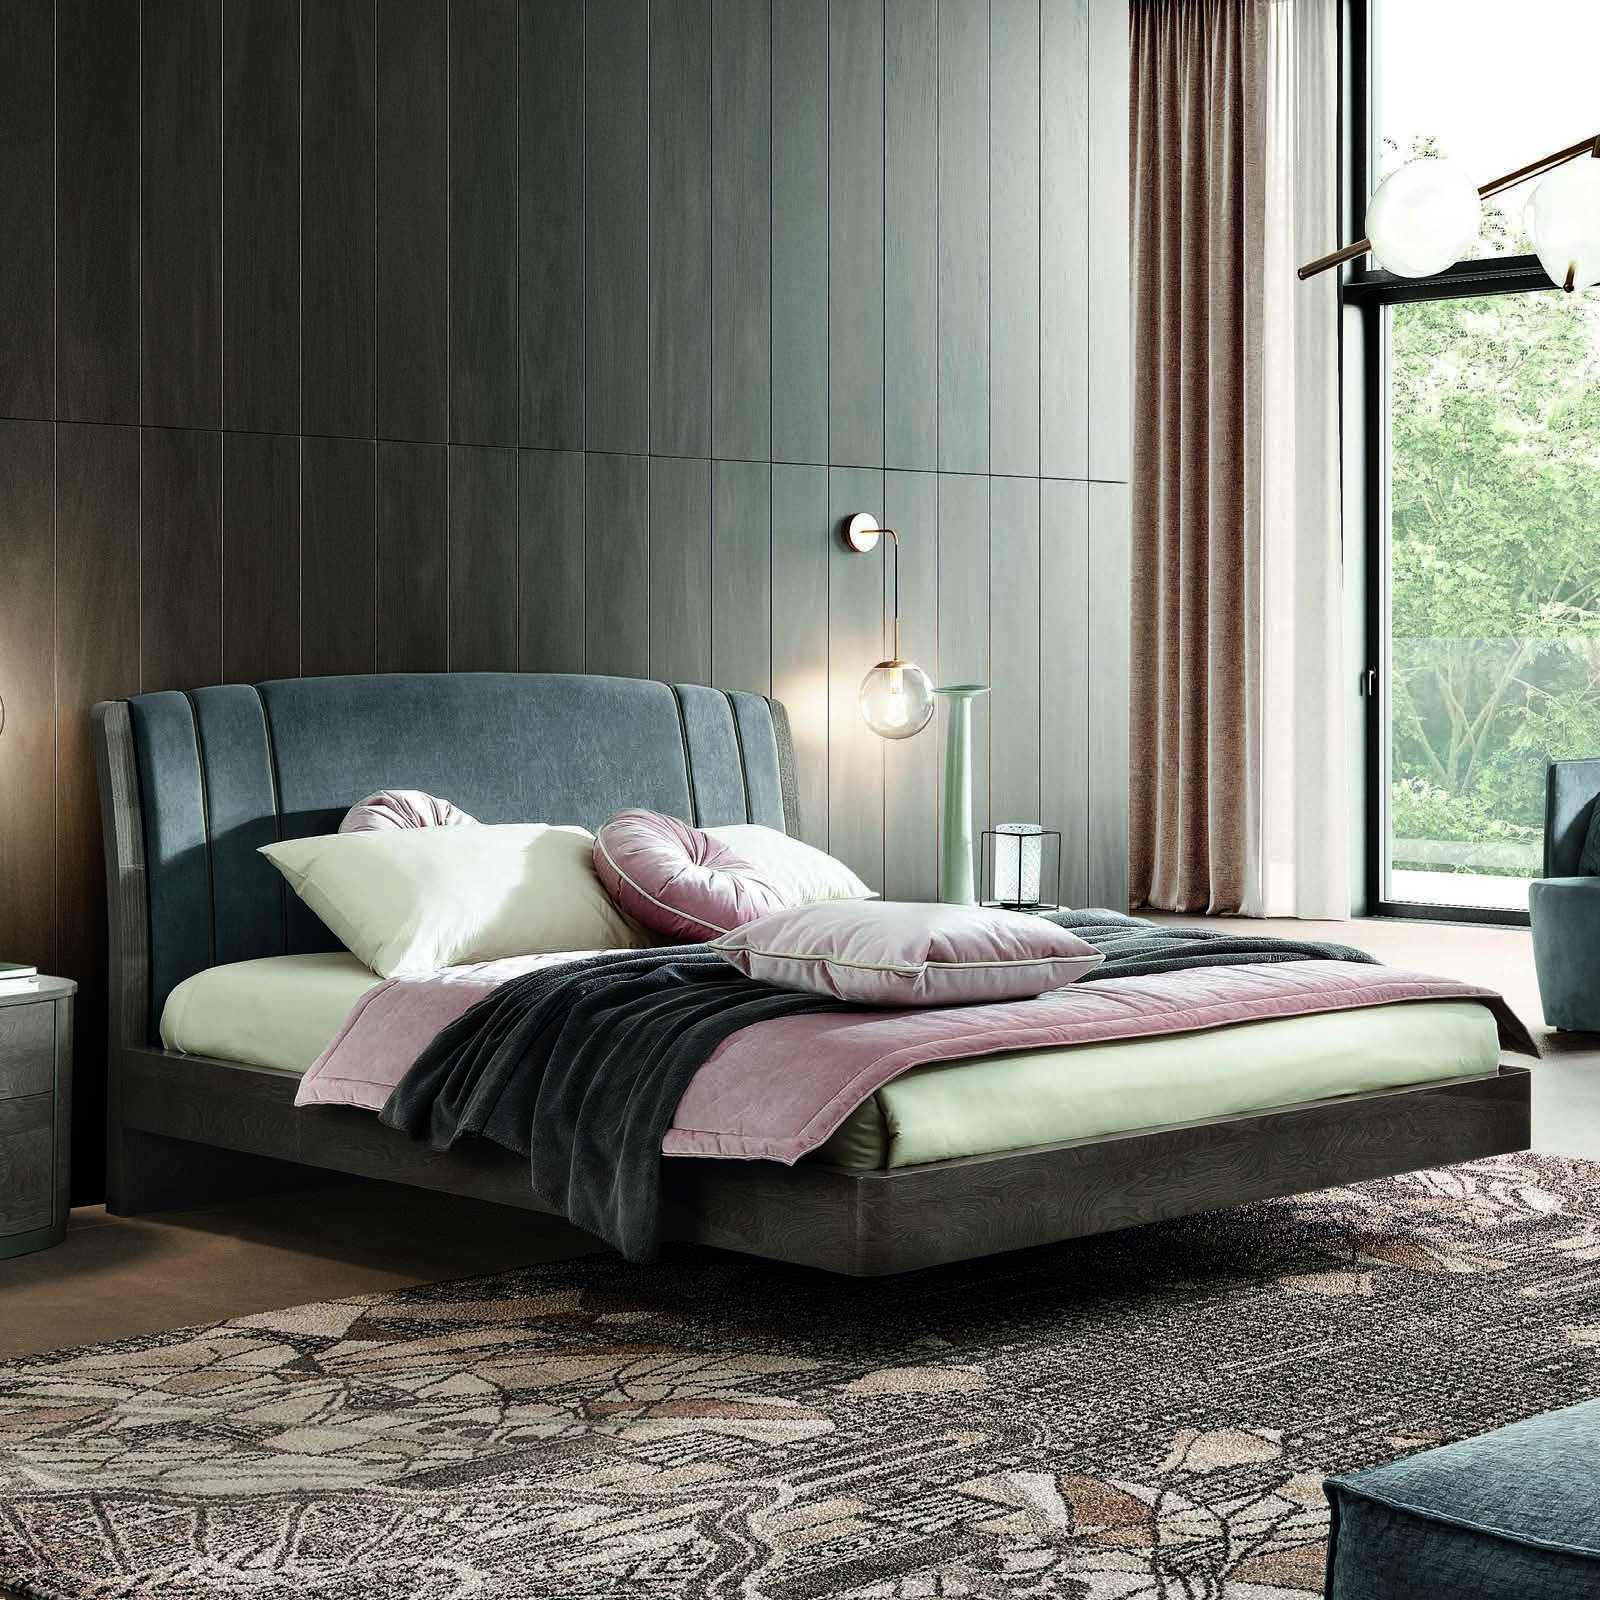 Кровать Trendy Camelgroup Maia, ткань Miraglio col. 617 Blu, 160x200 см, цвет: серебристая береза (154LET.48PL)154LET.48PL